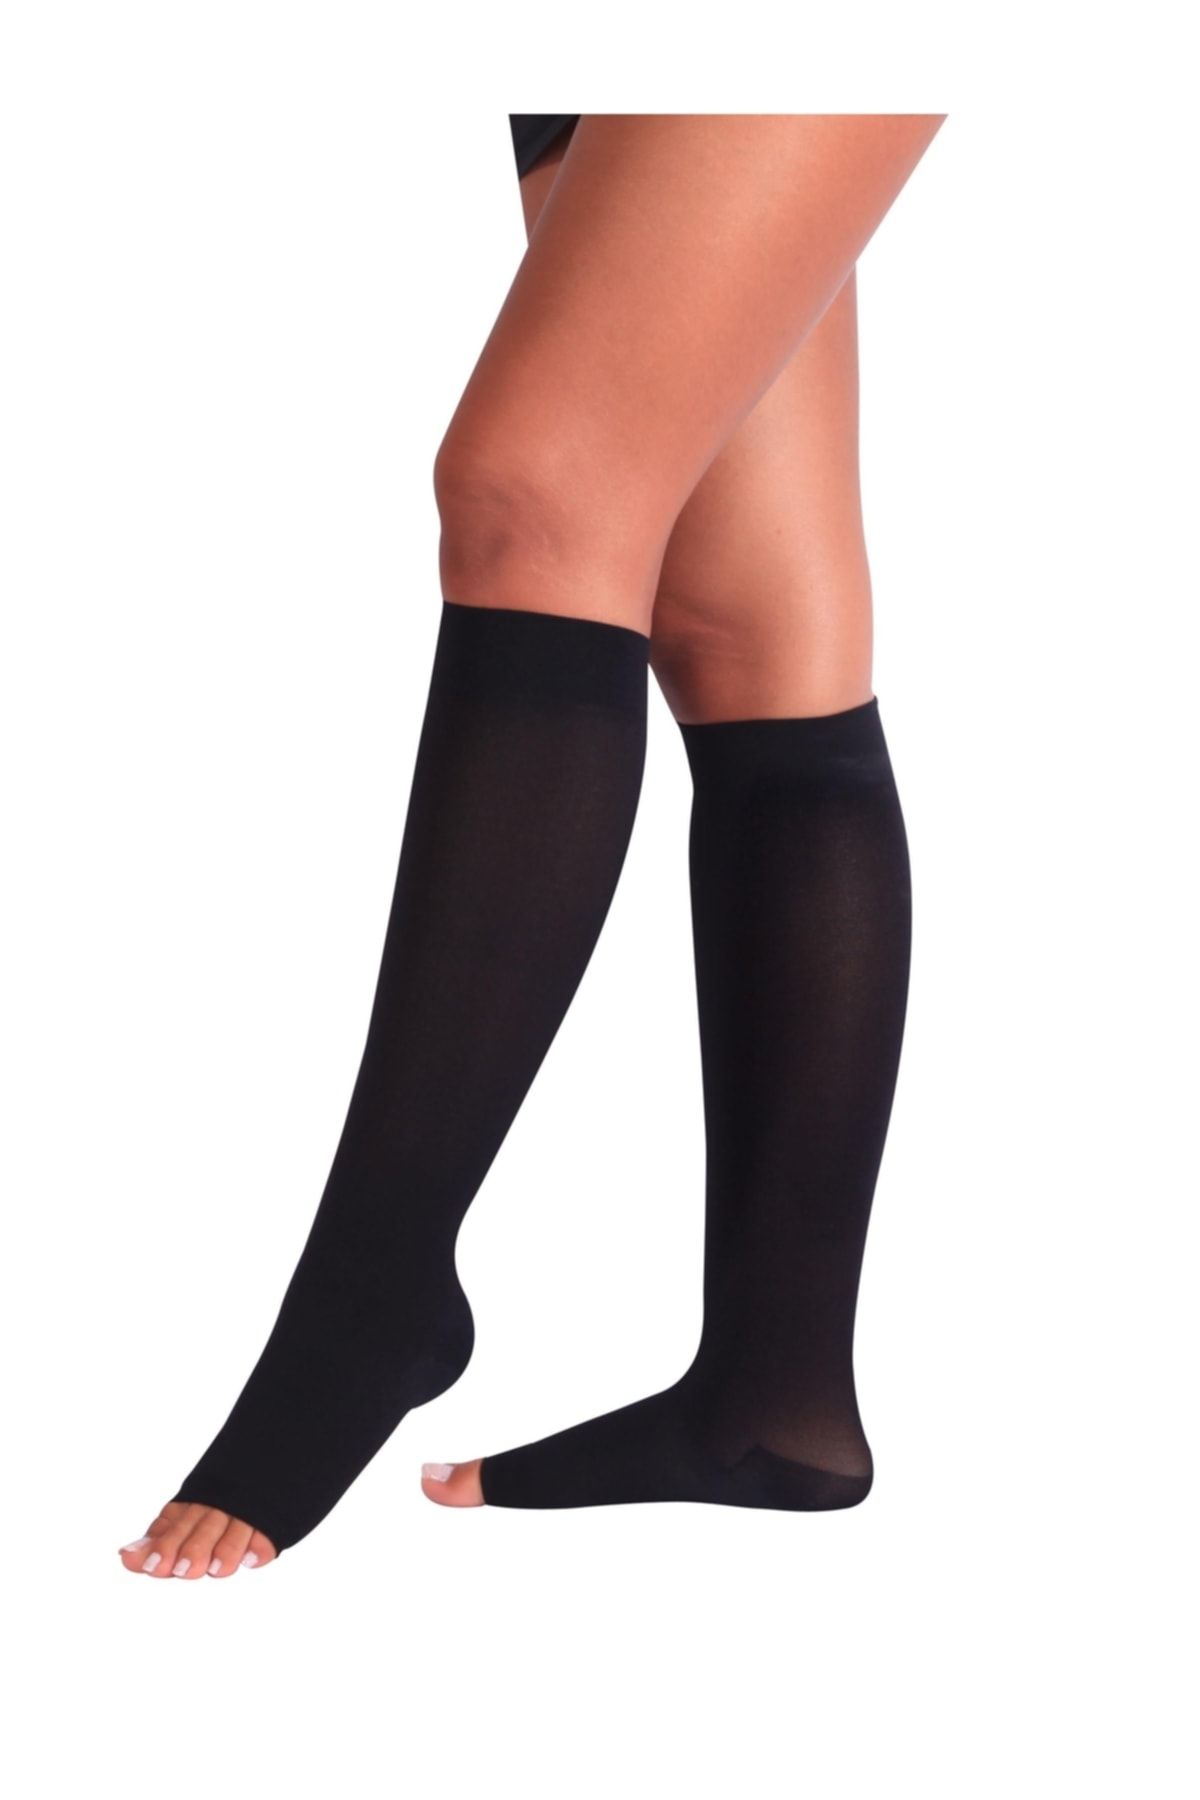 HeiN Varis Çorabı Siyah Renk Çorap Case Burnu Açık Orta Basınç Ccl 2 By Sungur Medikal